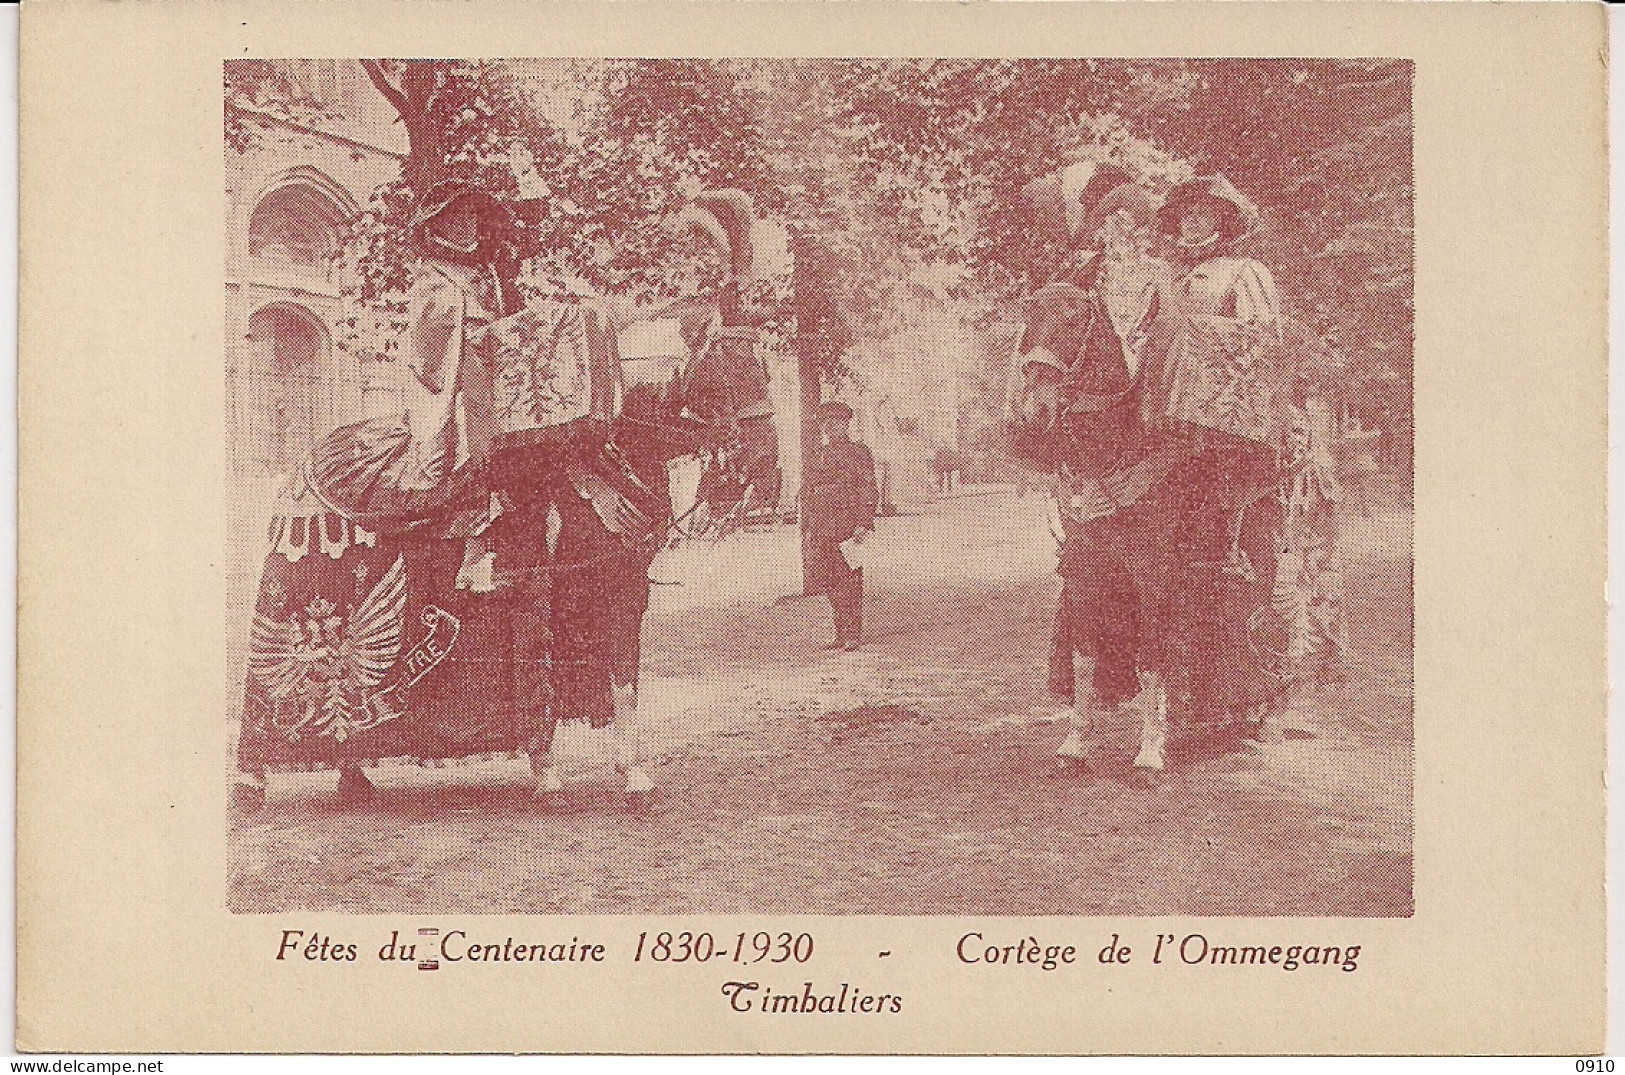 BRUXELLES-BRUSSEL " FETES DU CENTENAIRE 1830-1930-CORTEGE DE L'OMMEGANG-TIBALIERS-PAUKENISTEN" - Feste, Eventi